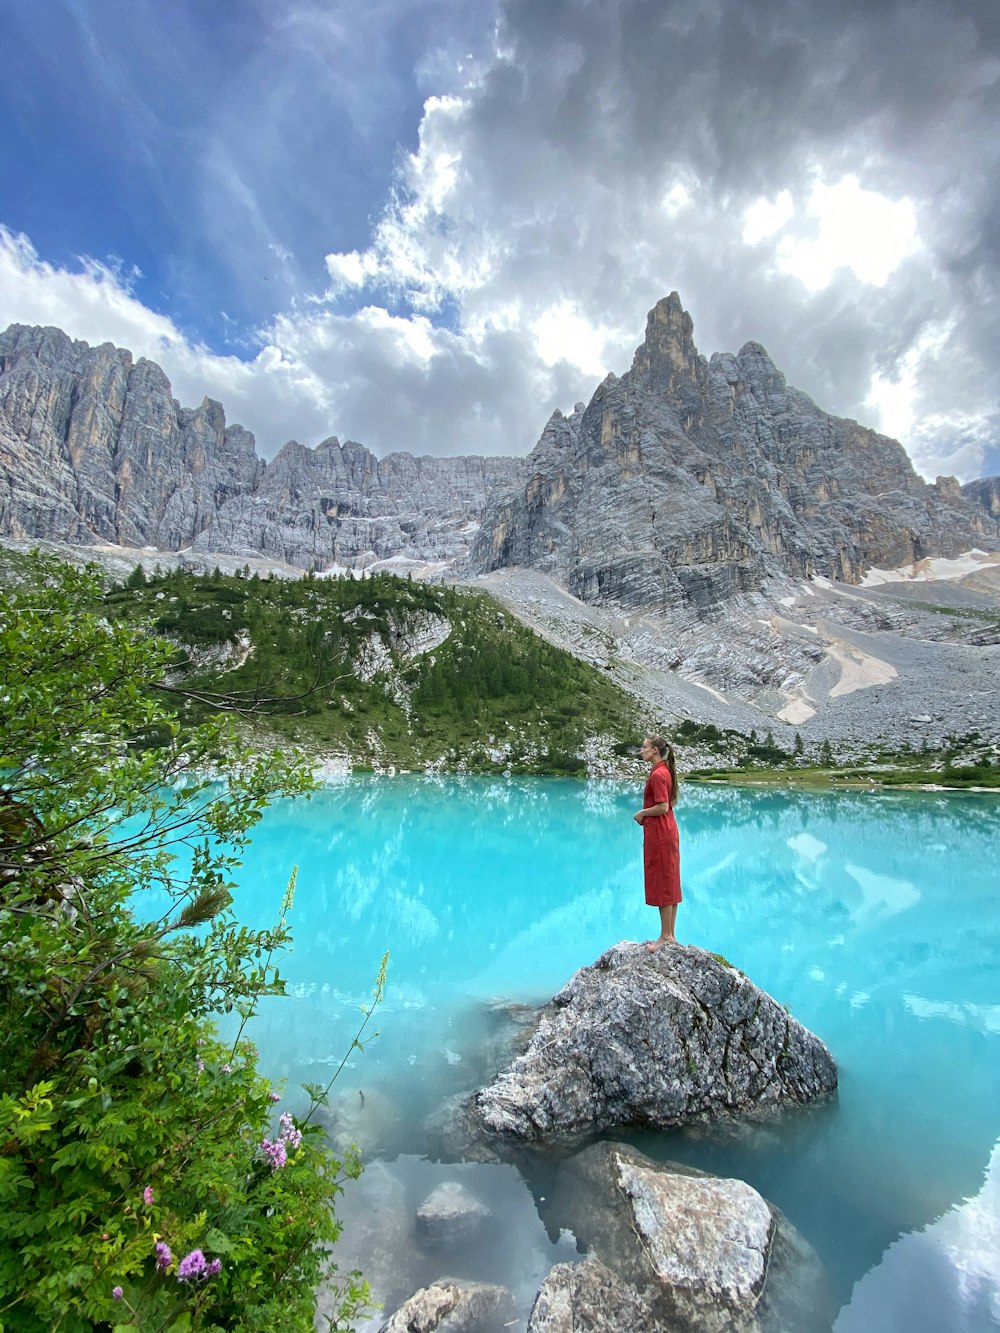 Una persona parada en una roca frente a un lago